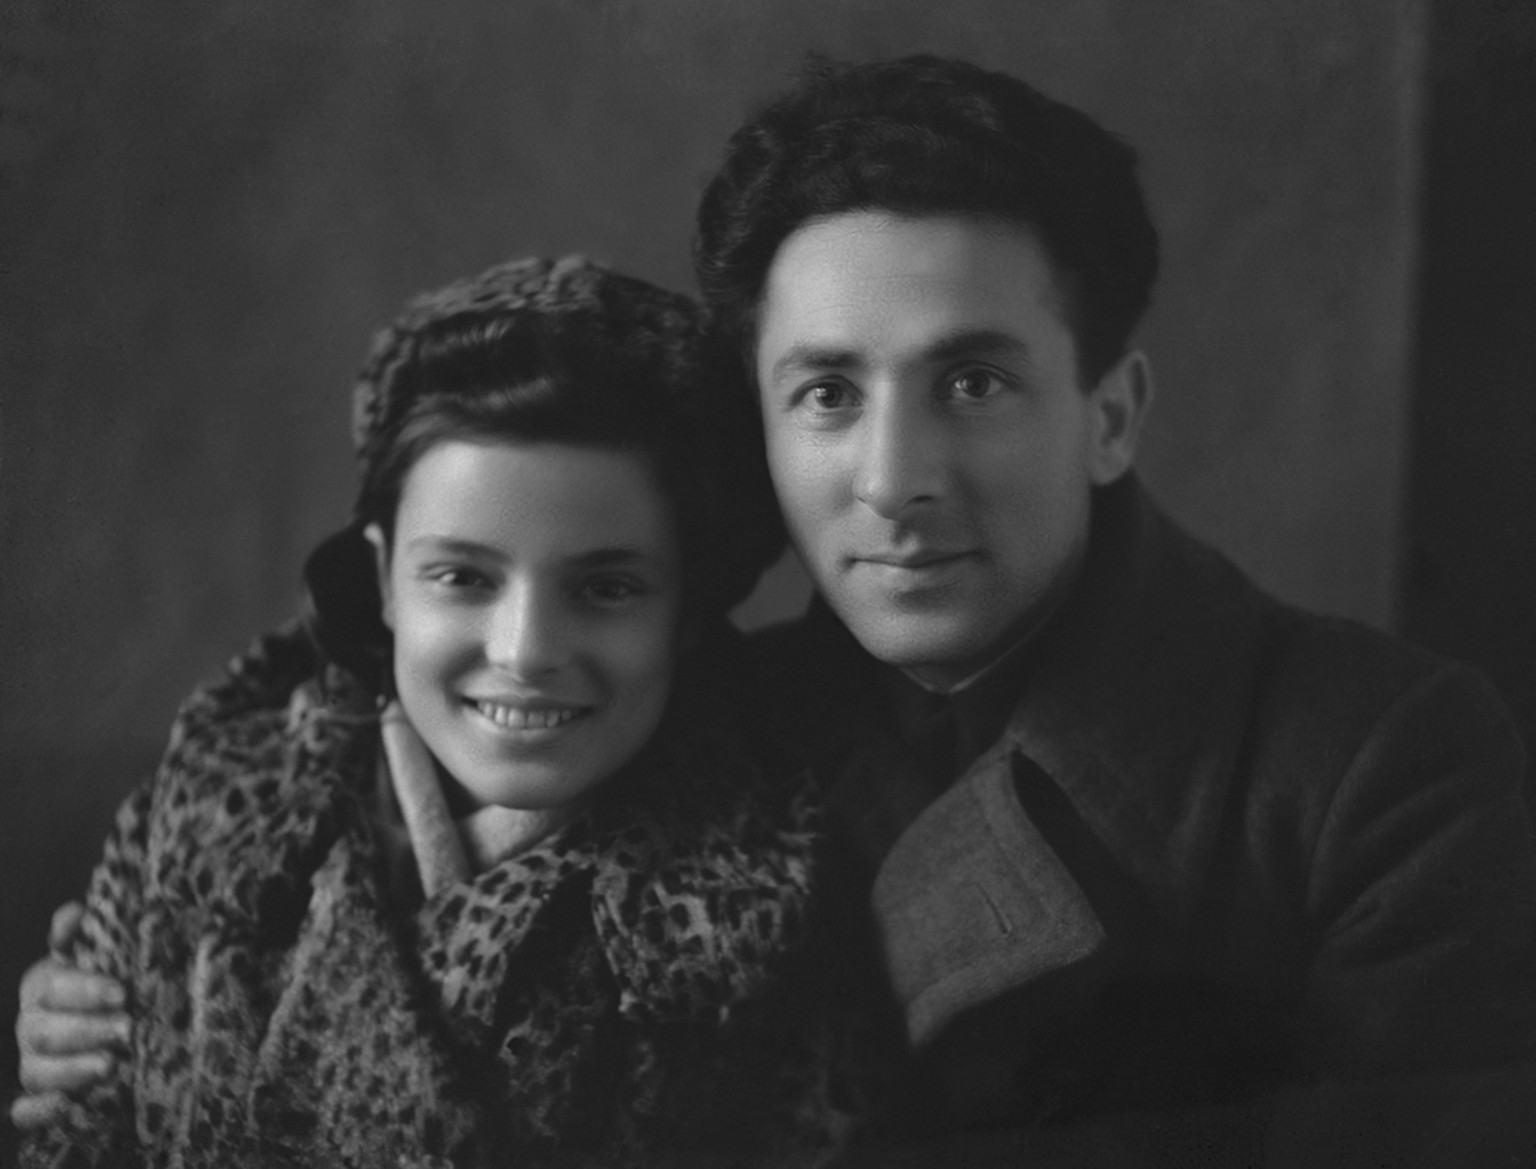 Fagel und Moische kurz nach ihrer Hochzeit, Ende 1944. Sie war 21, er zehn Jahre älter.